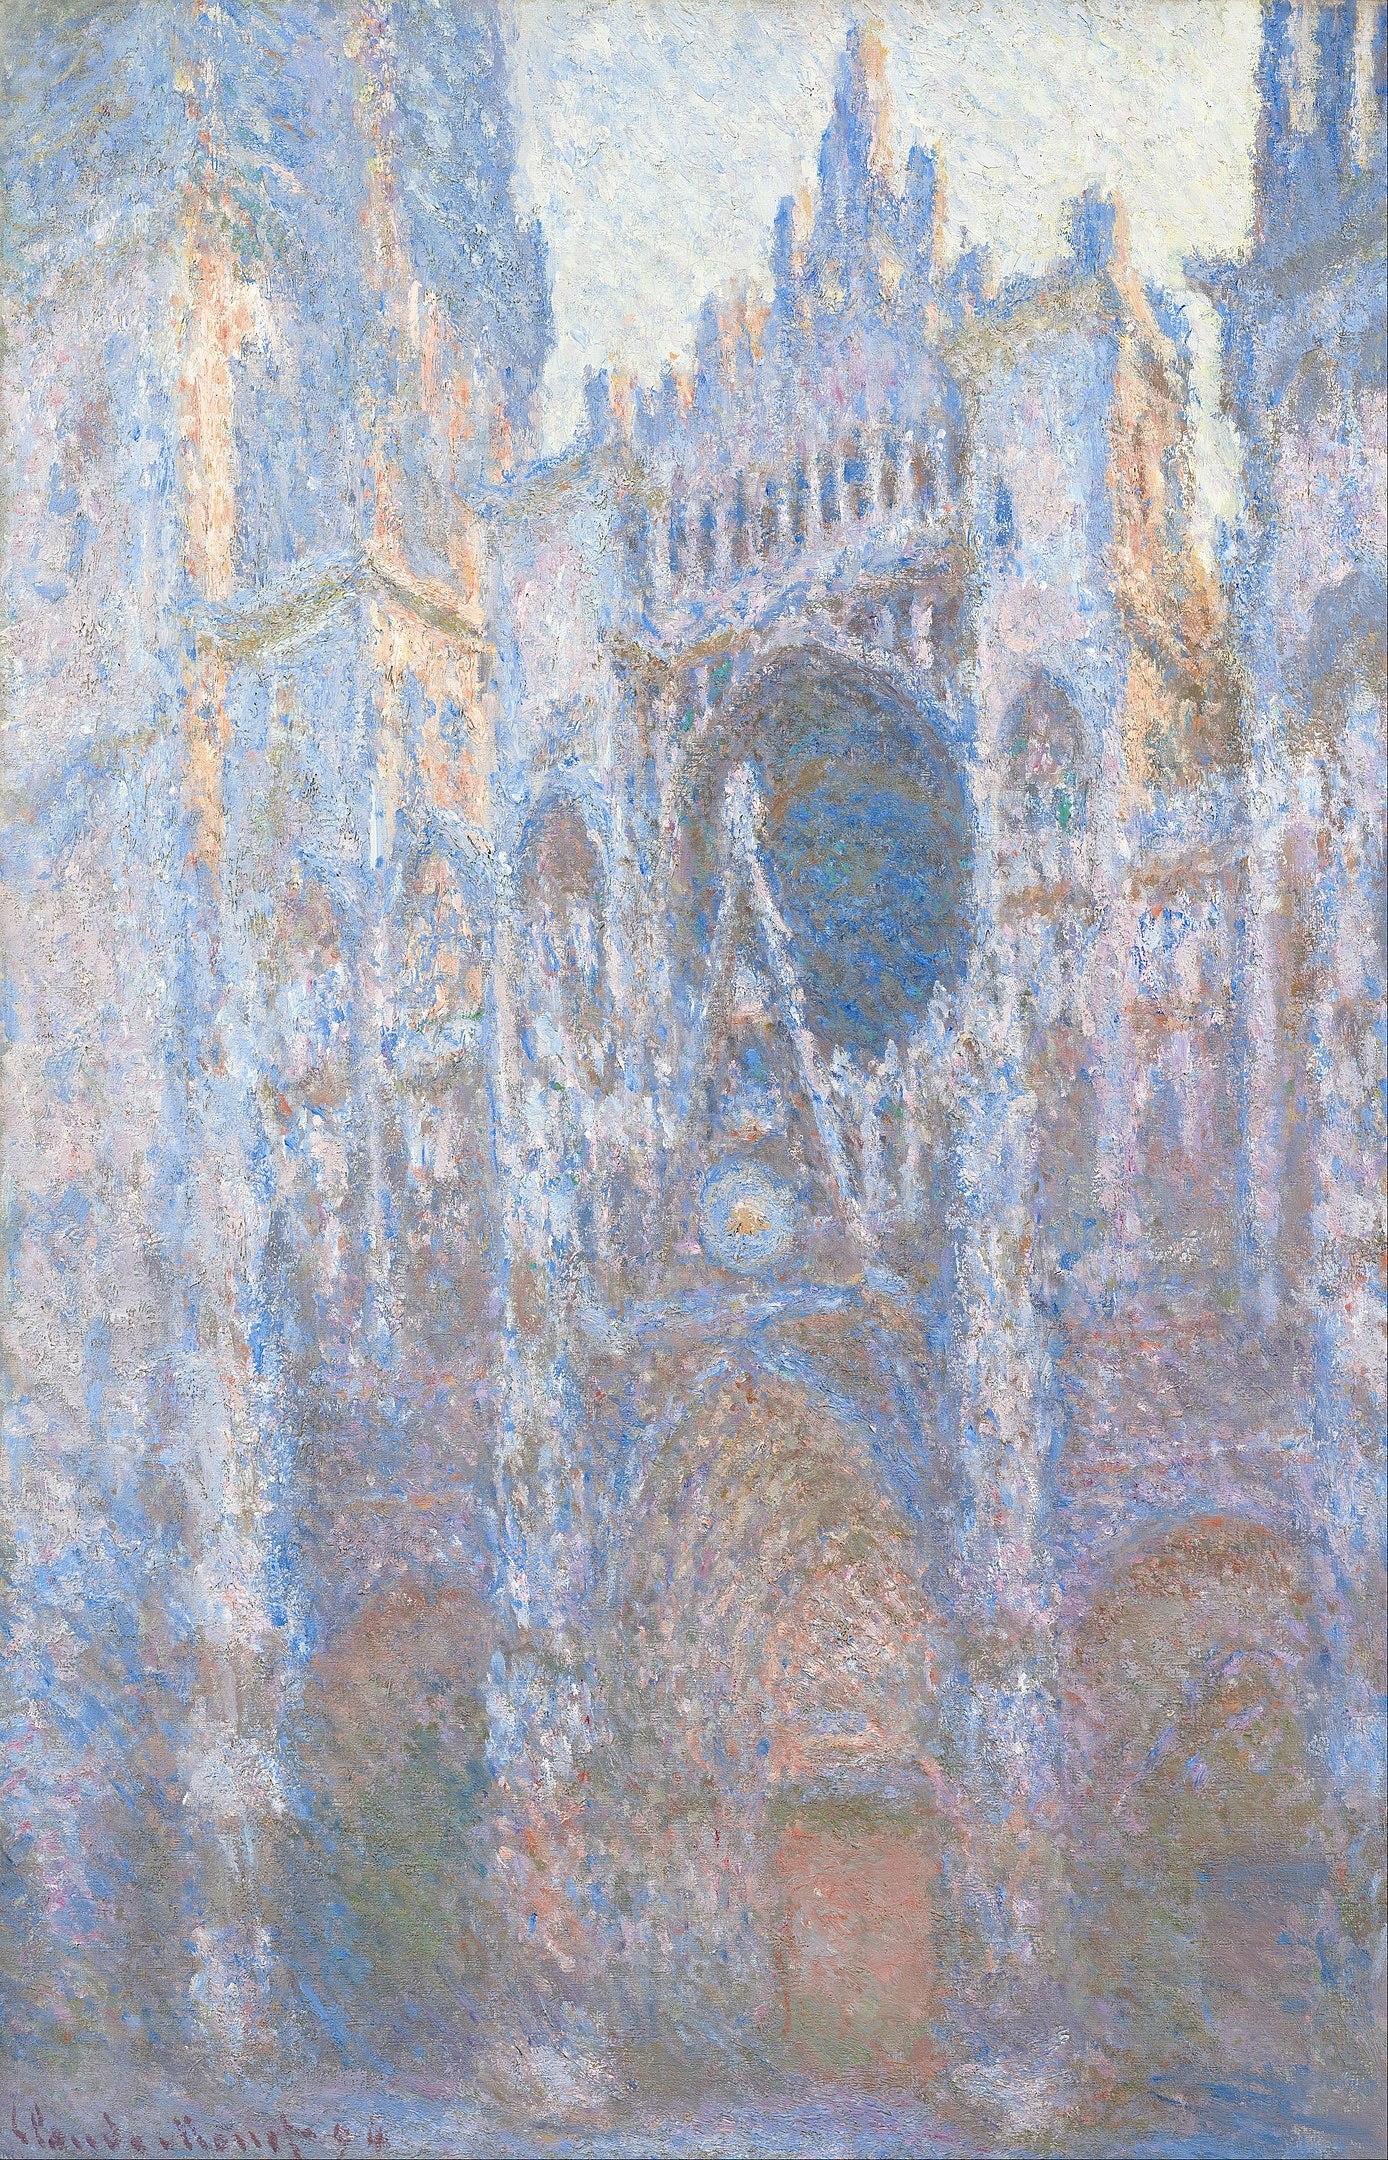 Cathédrale de Rouen, façade ouest (W1351)	- Claude Monet